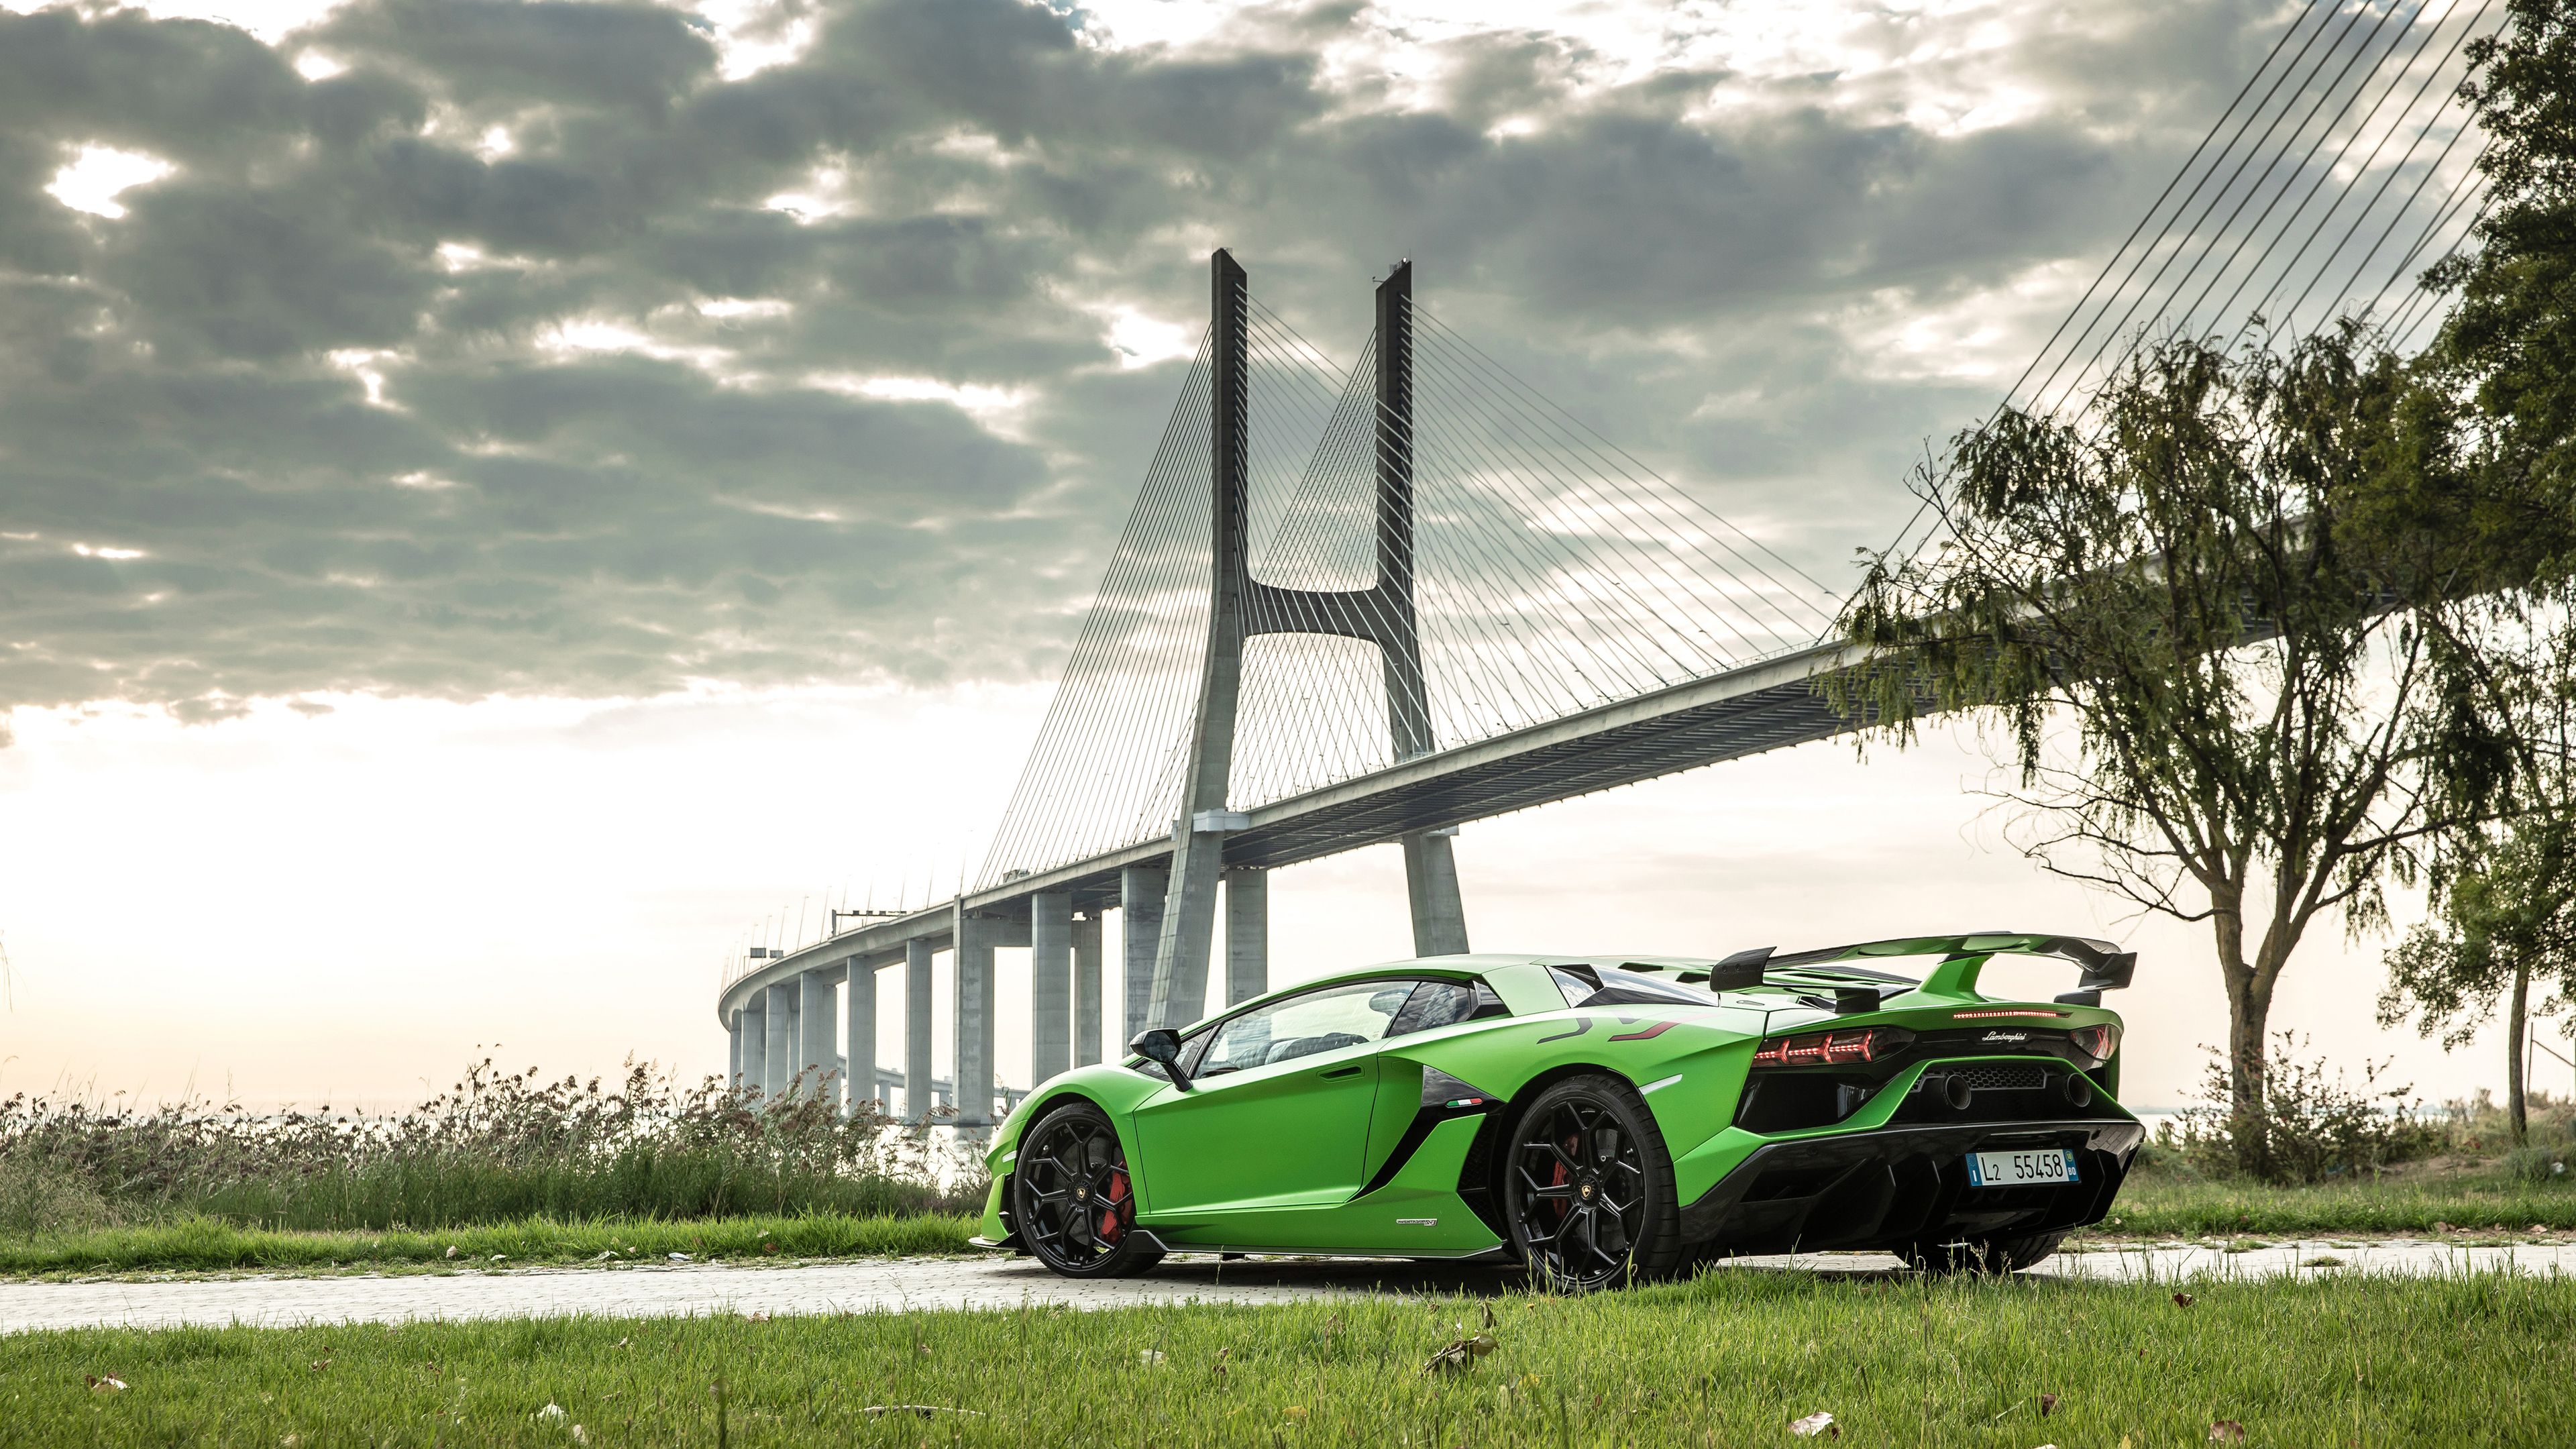 Siêu xe Lamborghini: Được biết đến là một trong những hãng xe hạng sang hàng đầu thế giới, Lamborghini luôn sở hữu các dòng sản phẩm đẳng cấp và sang trọng. Hãy để mình được ngắm nhìn những chiếc siêu xe Lamborghini với thiết kế đặc trưng, động cơ khỏe và sức mạnh phi thường. Bạn sẽ không bao giờ quên được những trải nghiệm tuyệt vời khi chiếc xe này chạm đến tốc độ cao nhất.